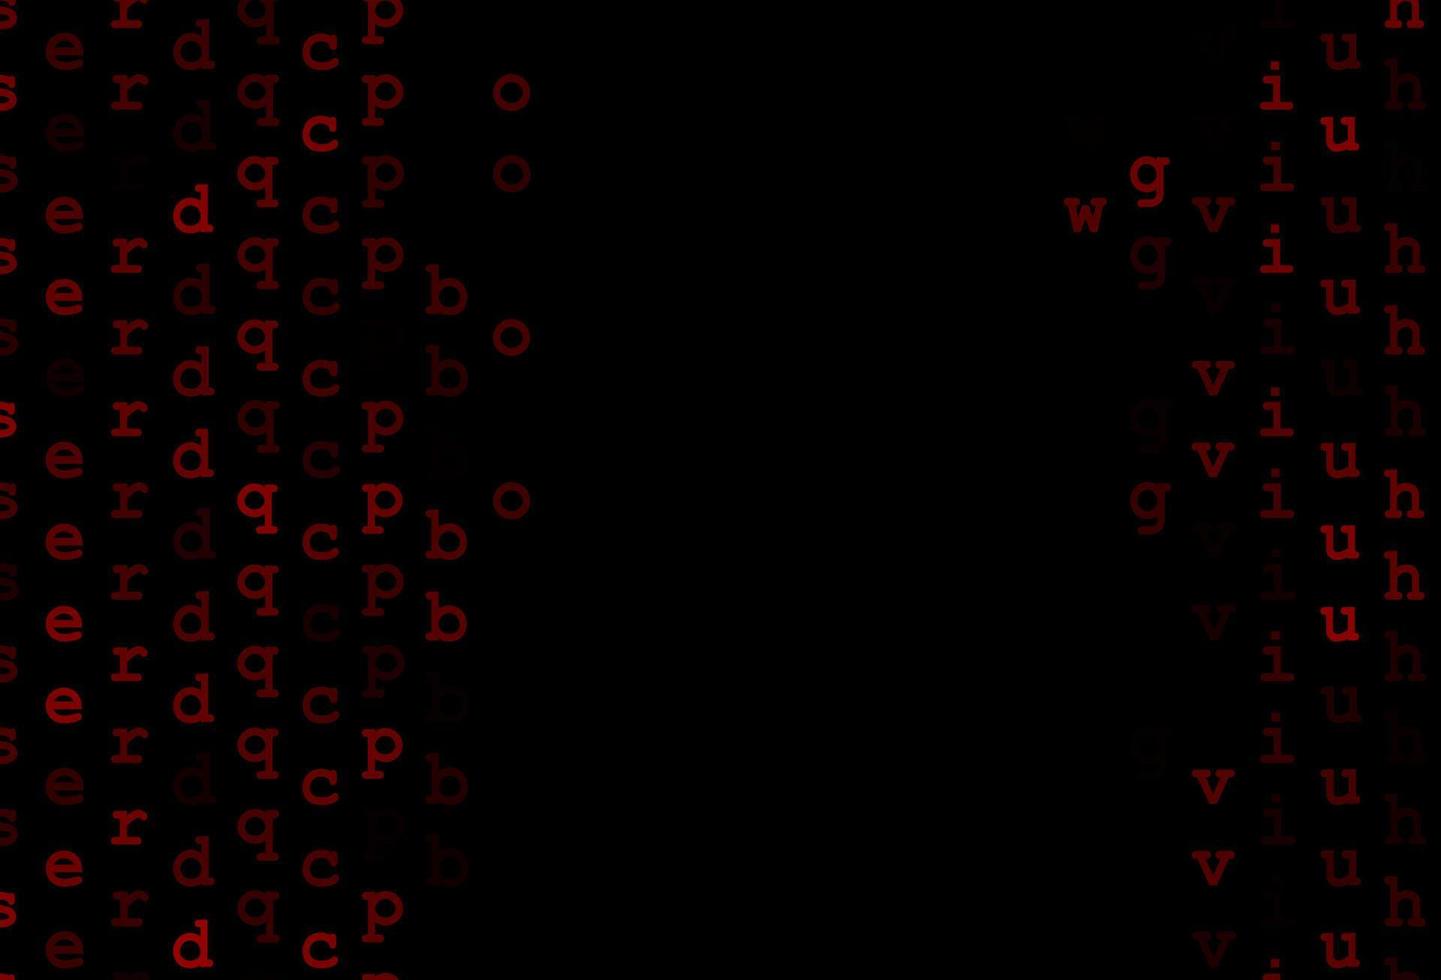 modello vettoriale rosso scuro con lettere isolate.